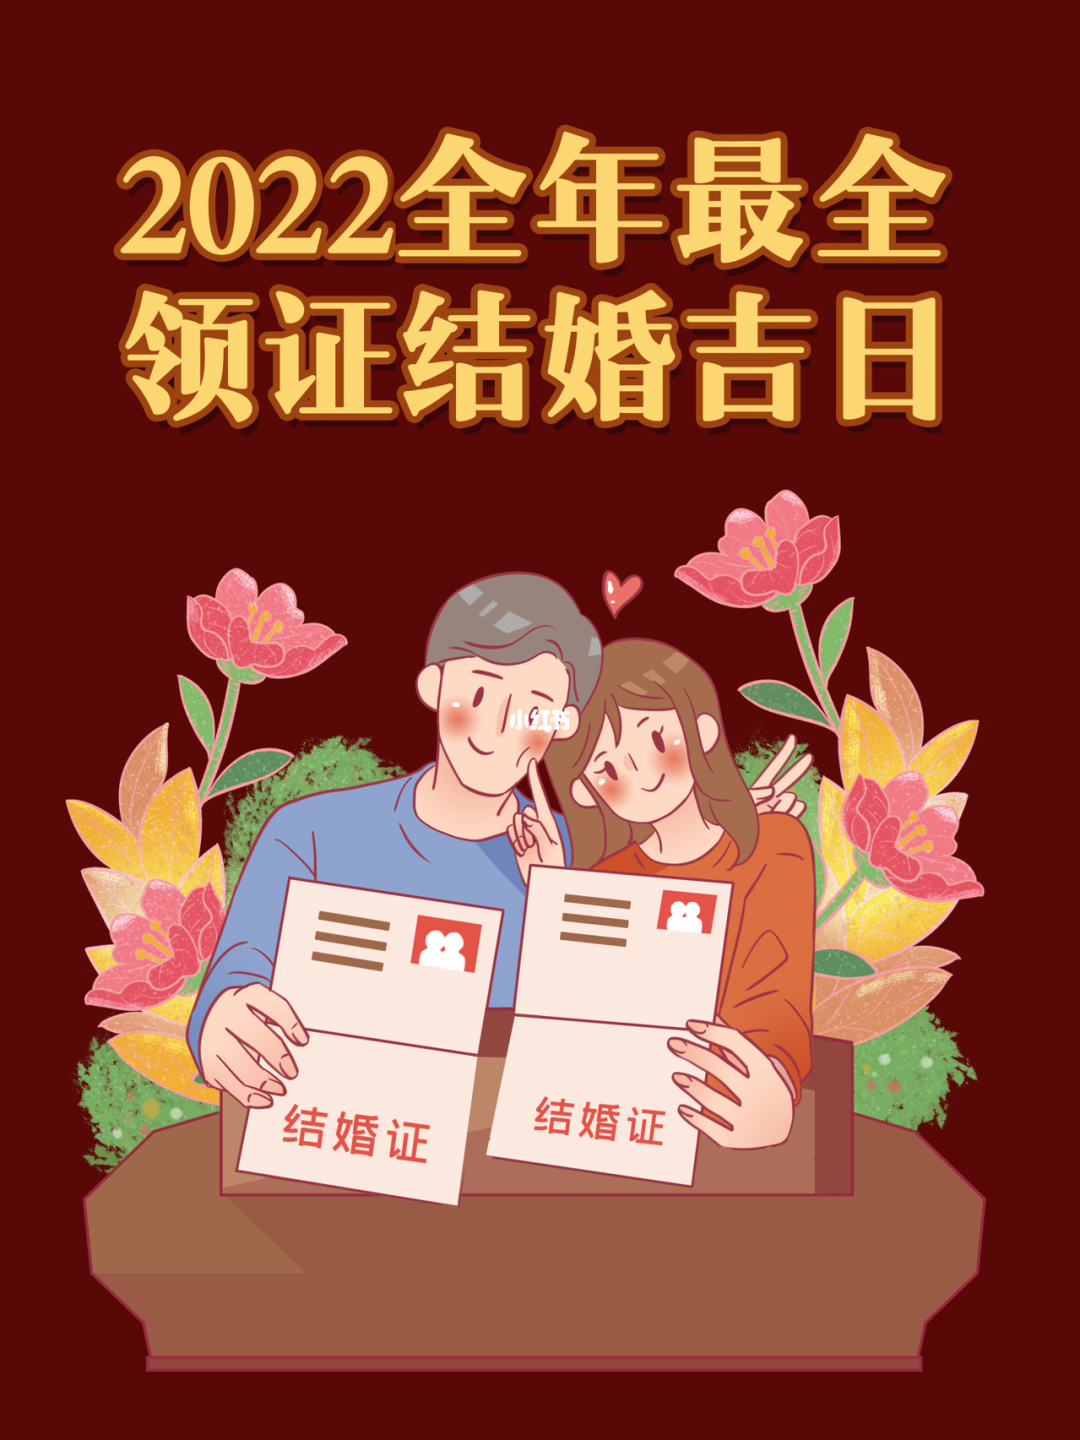 风水堂:满意答案怎样选择中国的结婚吉日